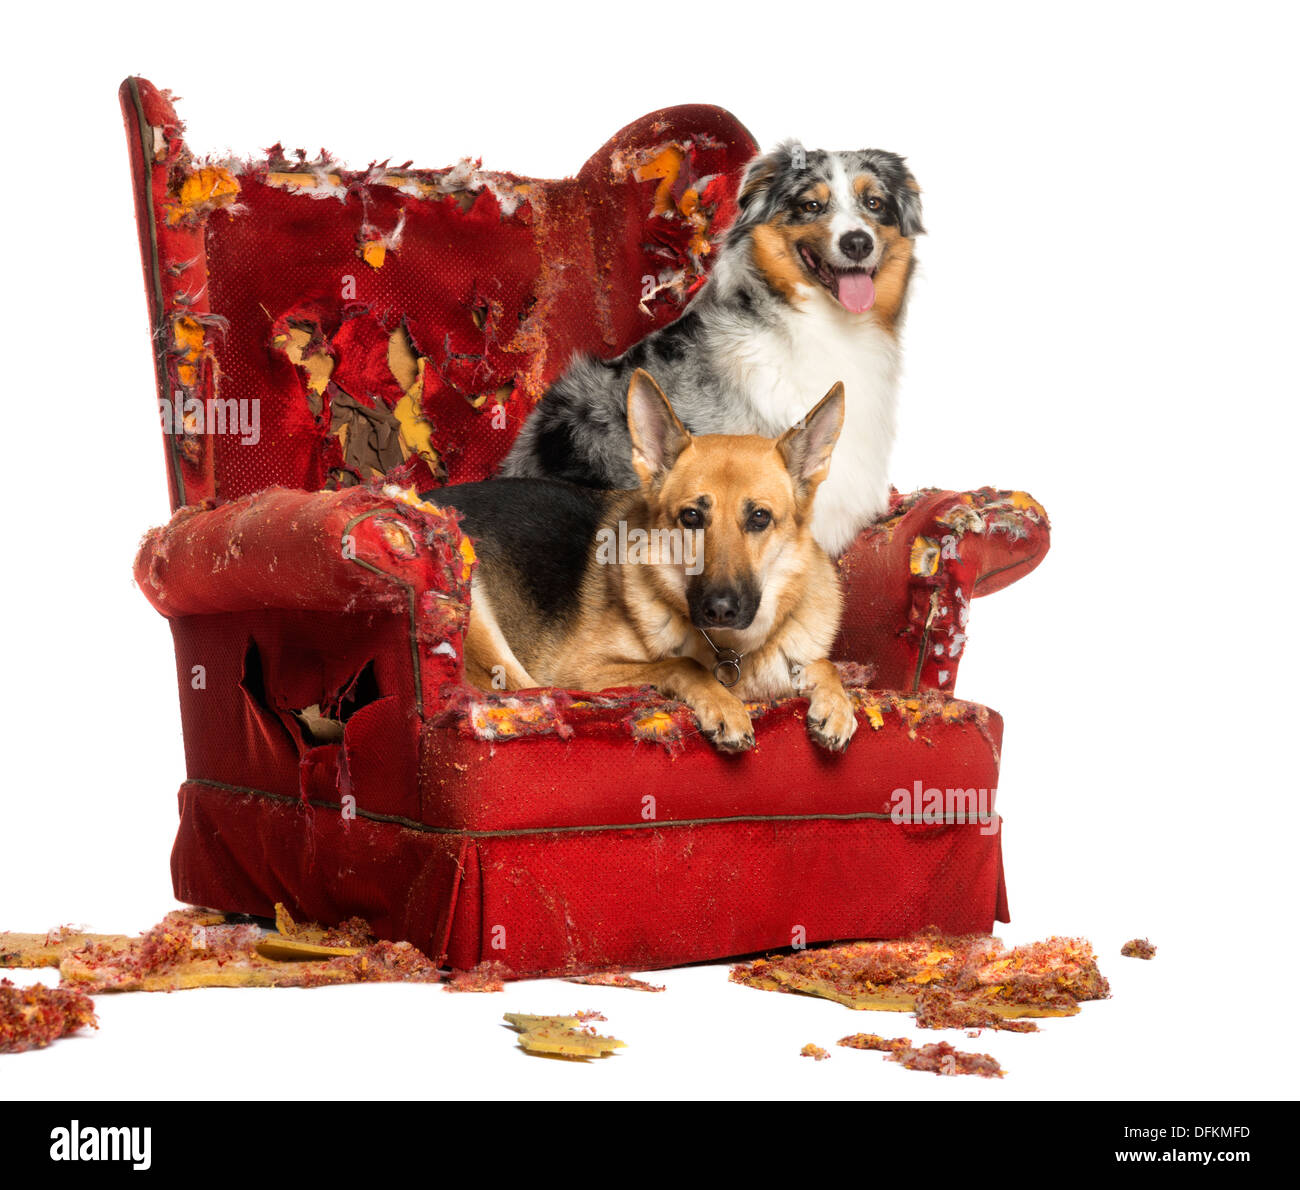 L'allemand et l'Australian Shepherd Dog sur un fauteuil détruit against white background Banque D'Images